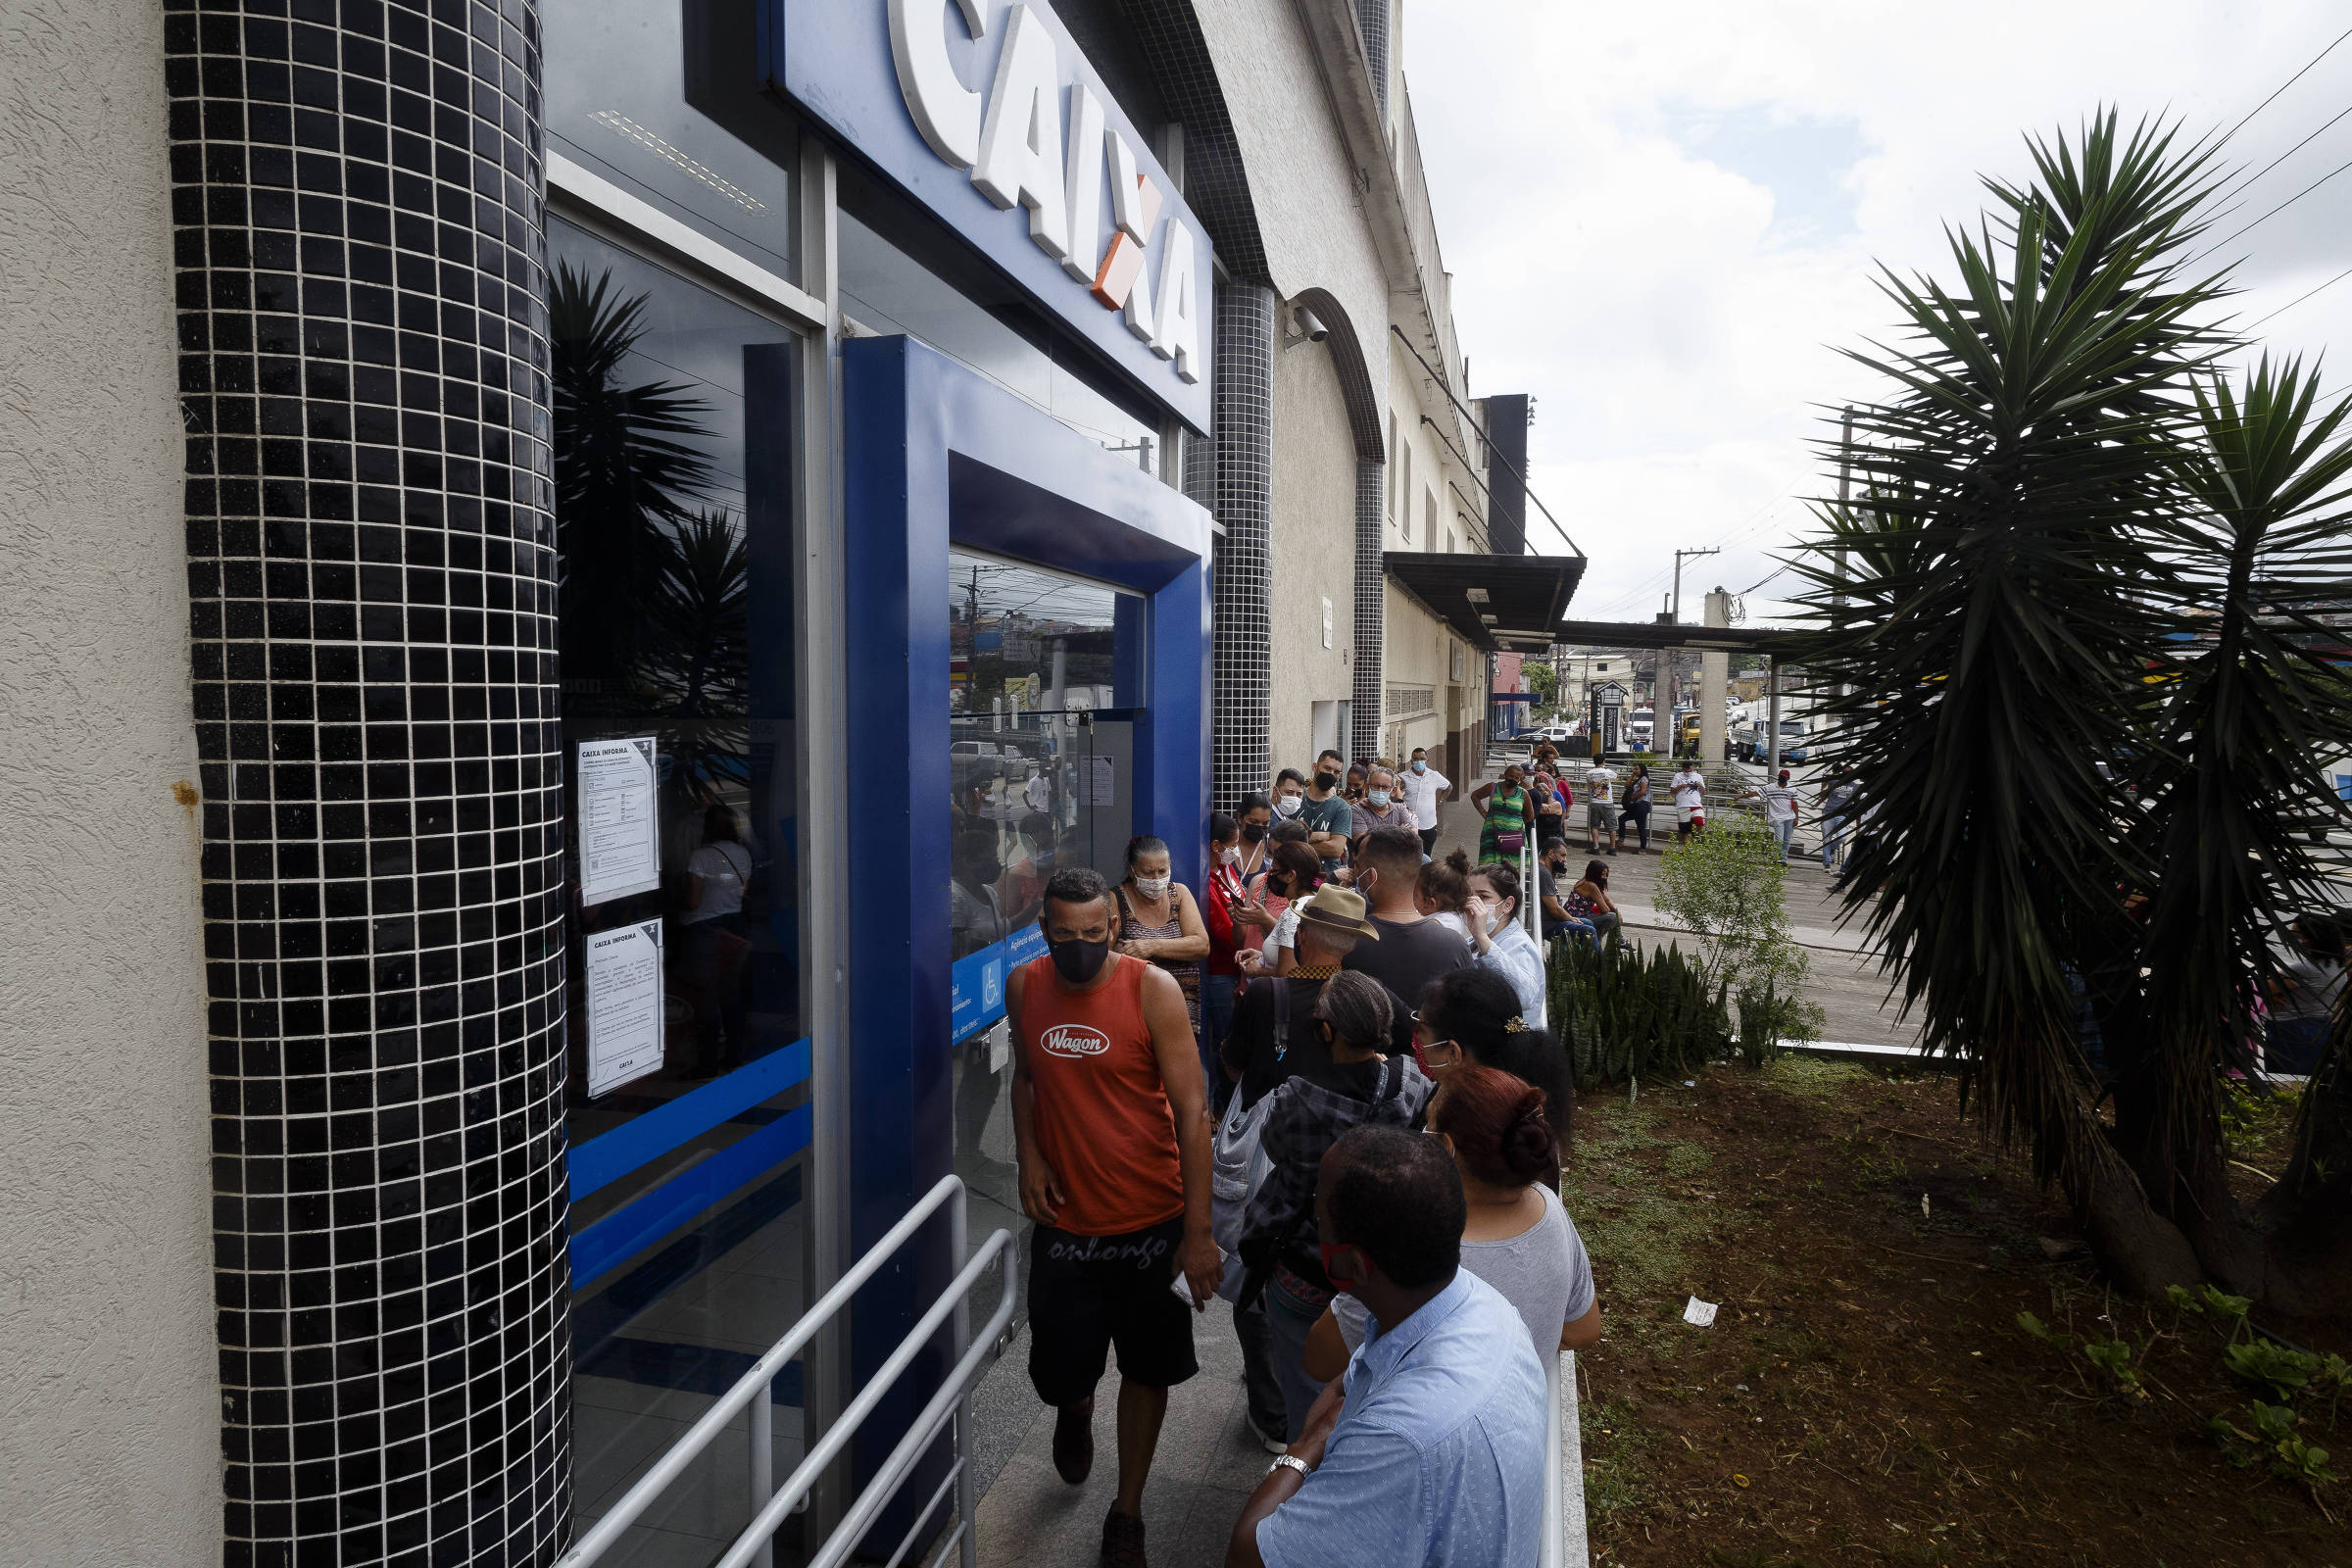 Clube dos Bancários estará aberto no feriado de Tiradentes – Bancarios  Franca